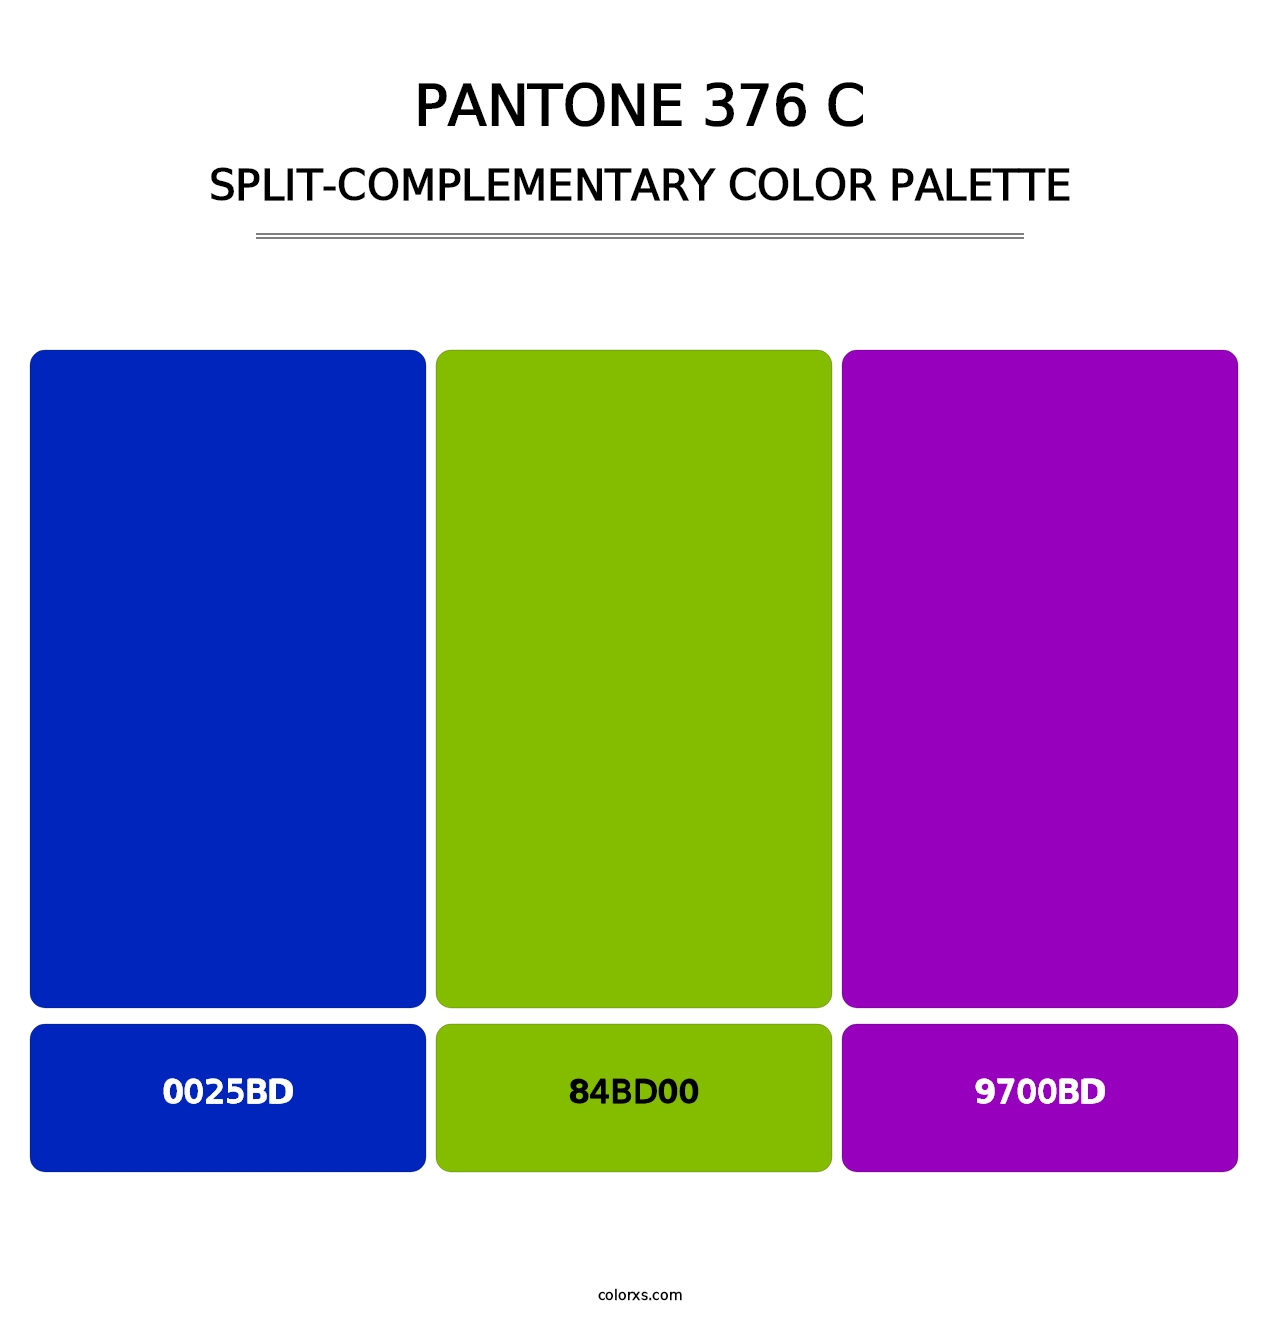 PANTONE 376 C - Split-Complementary Color Palette